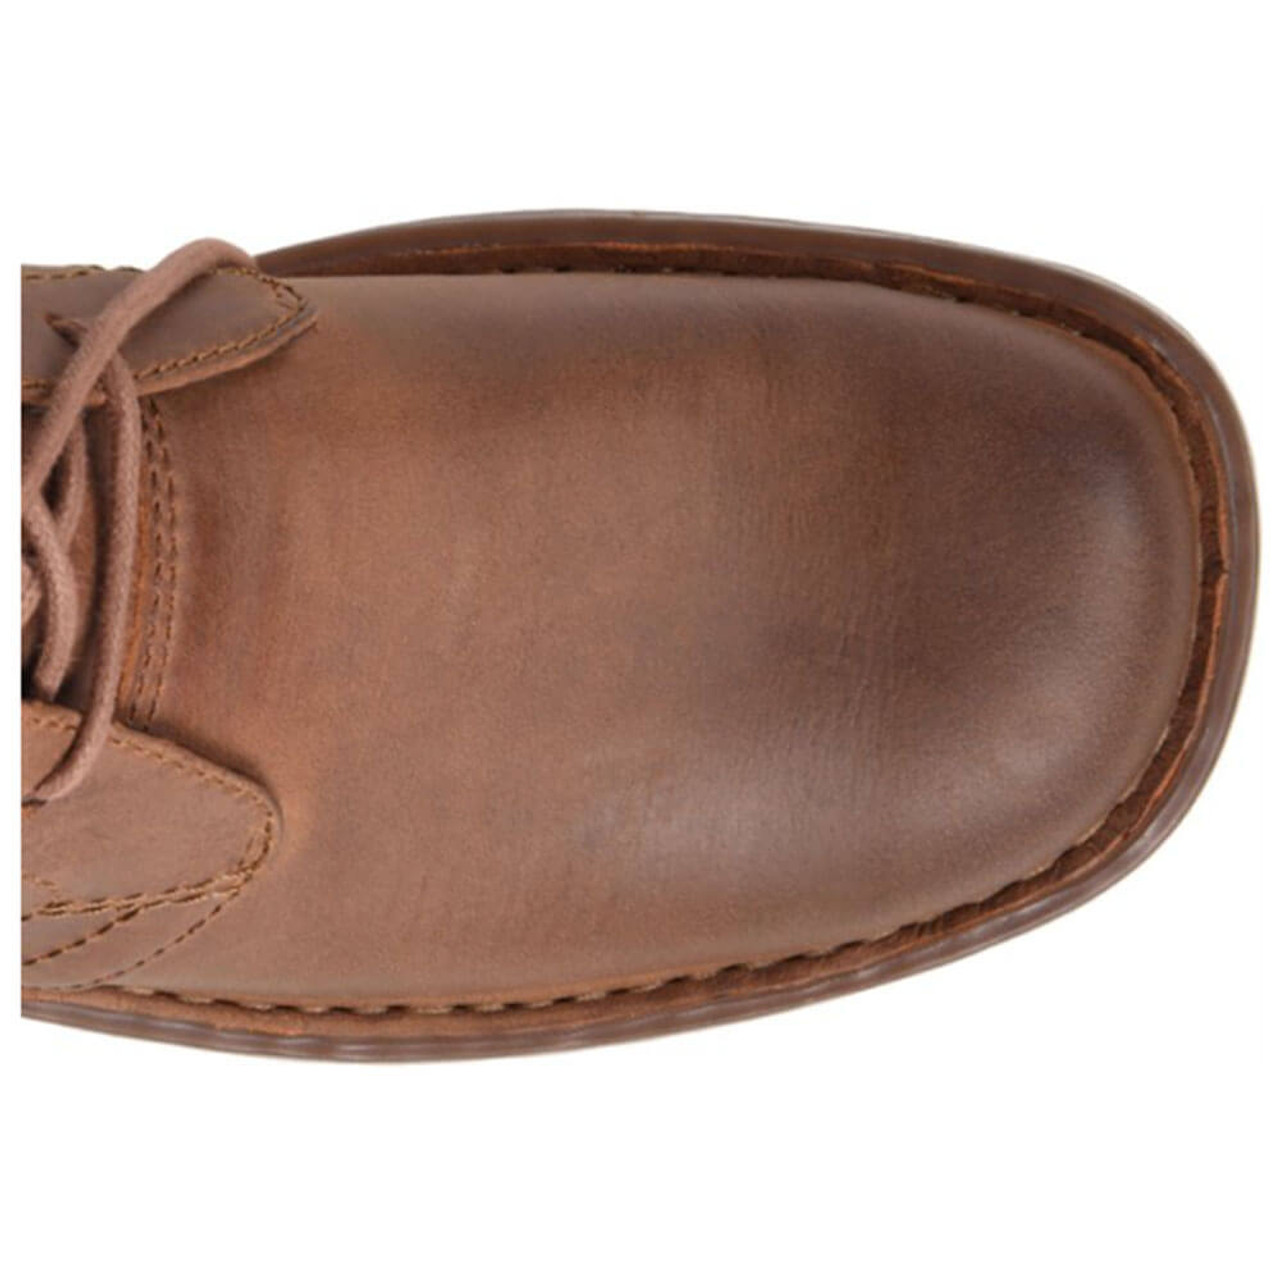 Born Men's Harrison Leather Chukka Boots